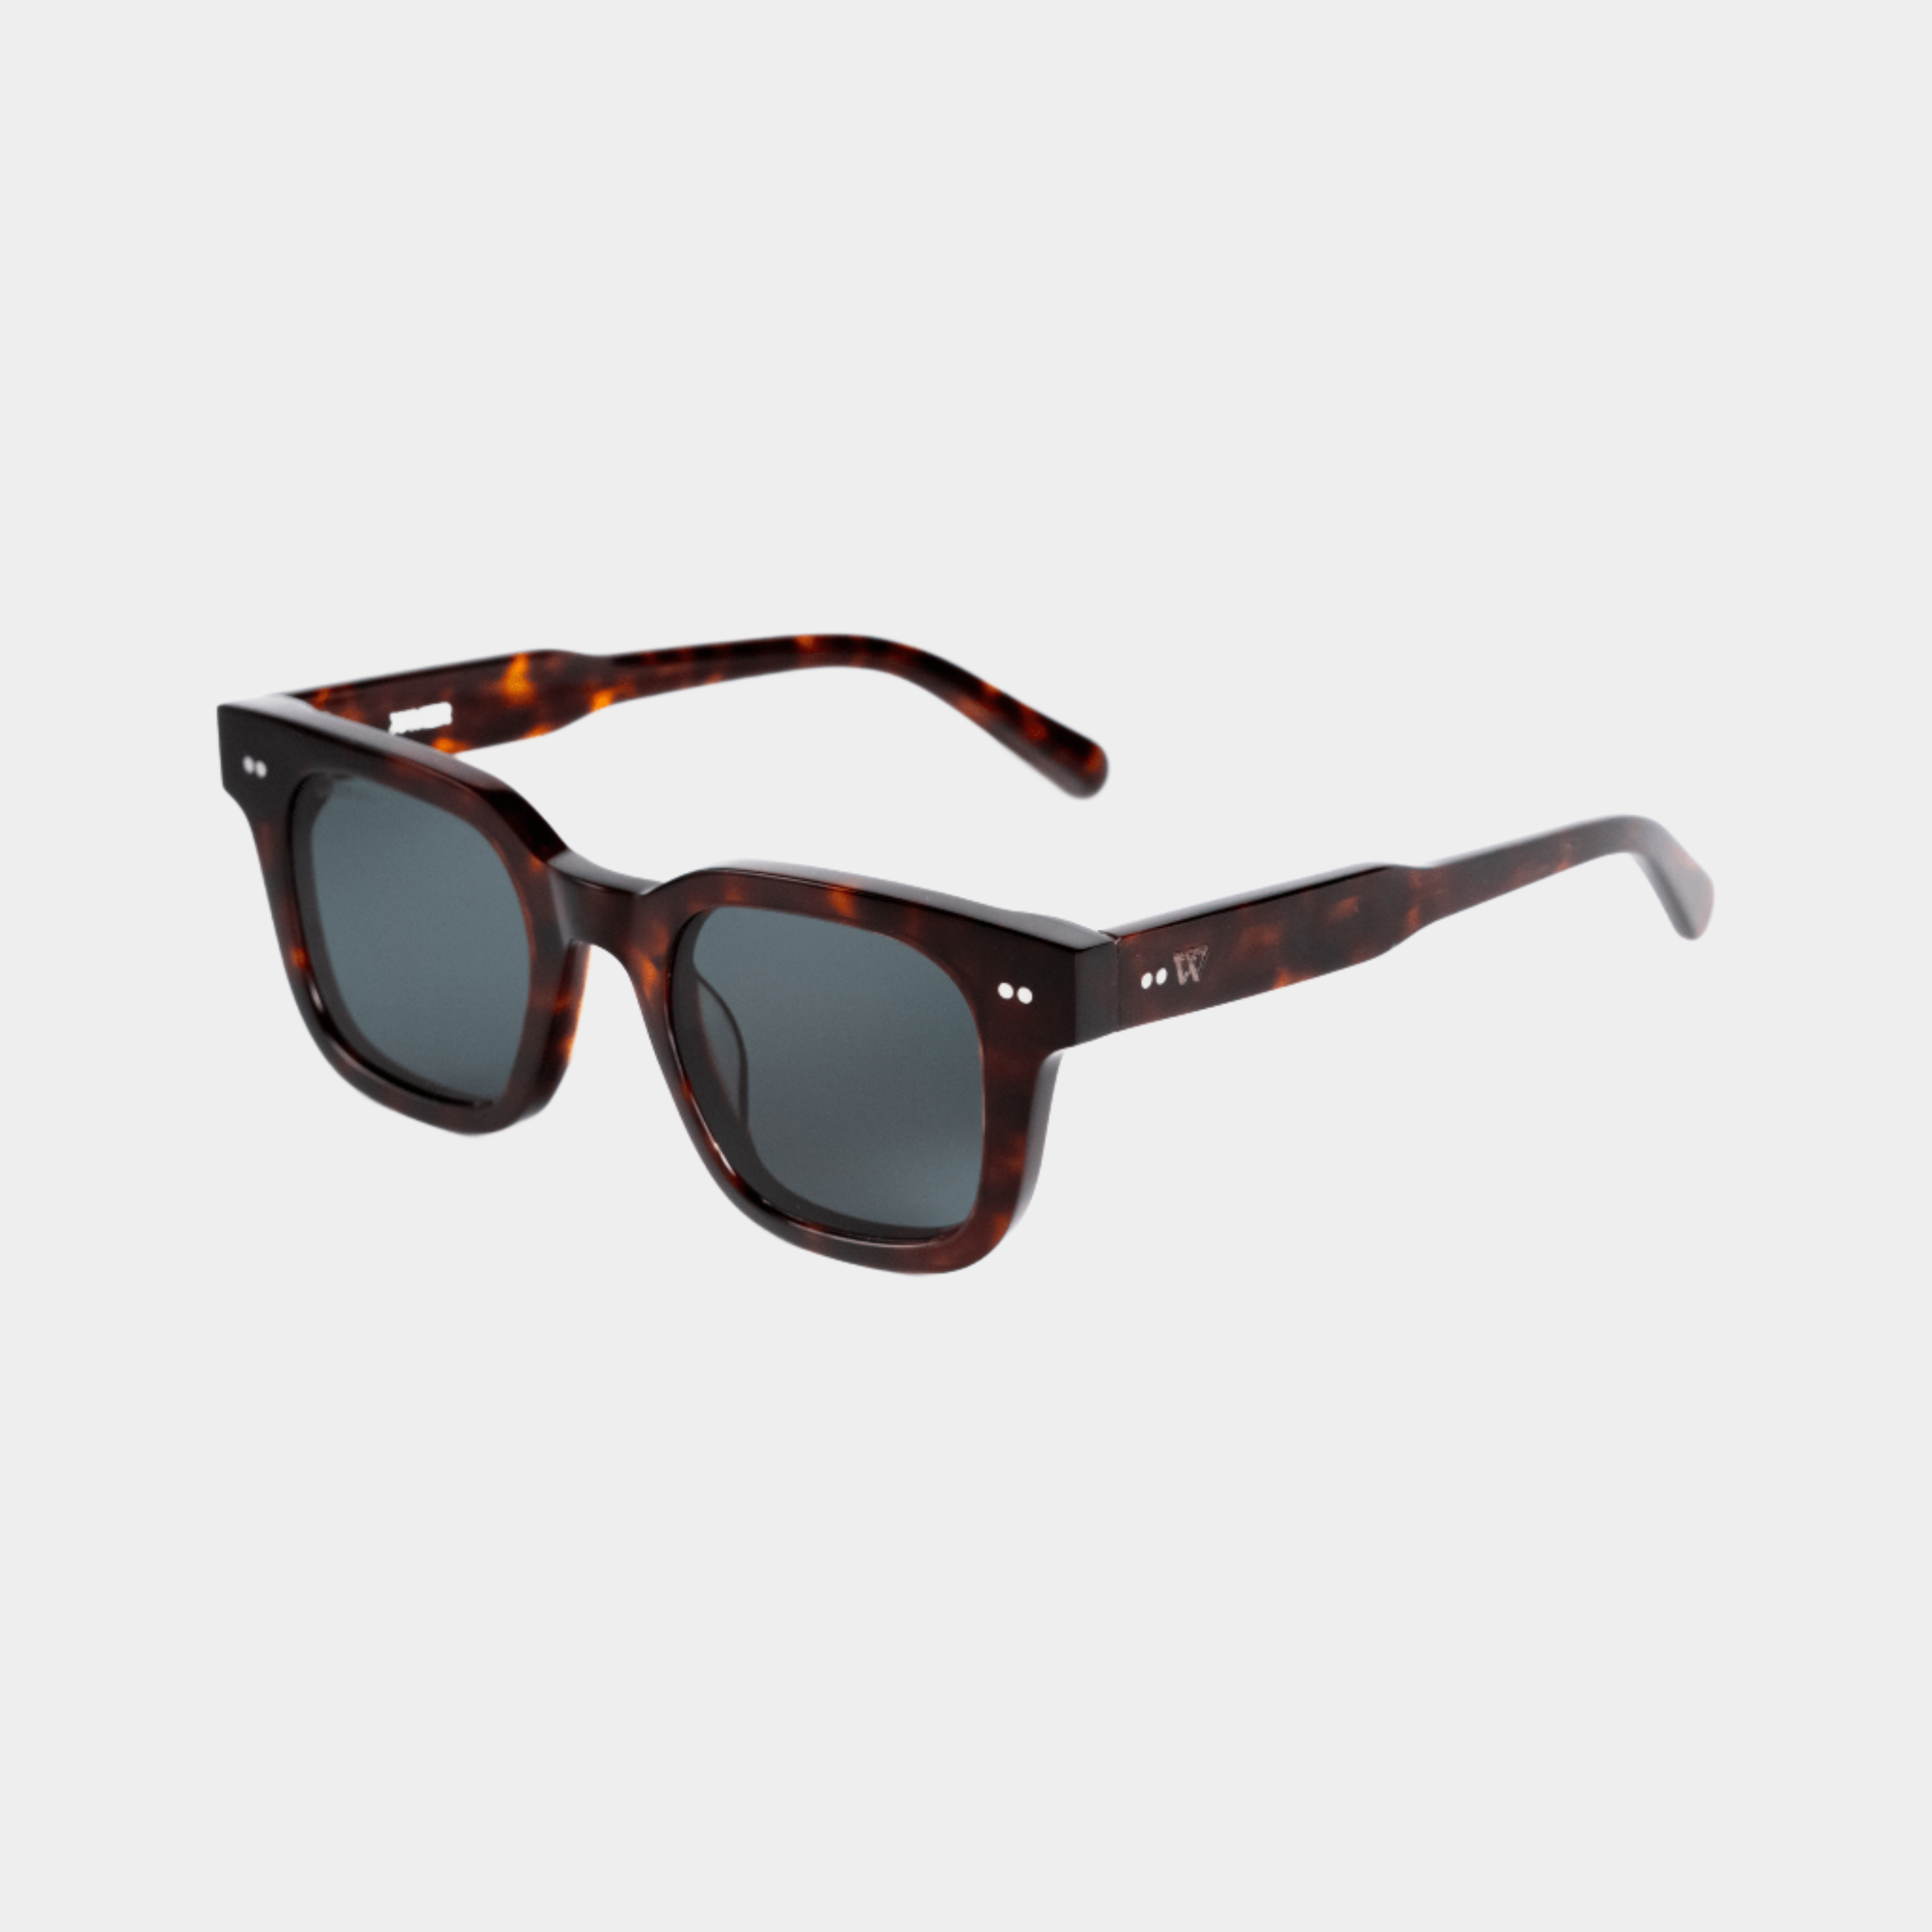 Walter Hill Sunglasses Tortoise / Standard / Polarized Cat.3 XAVIER - Tortoise